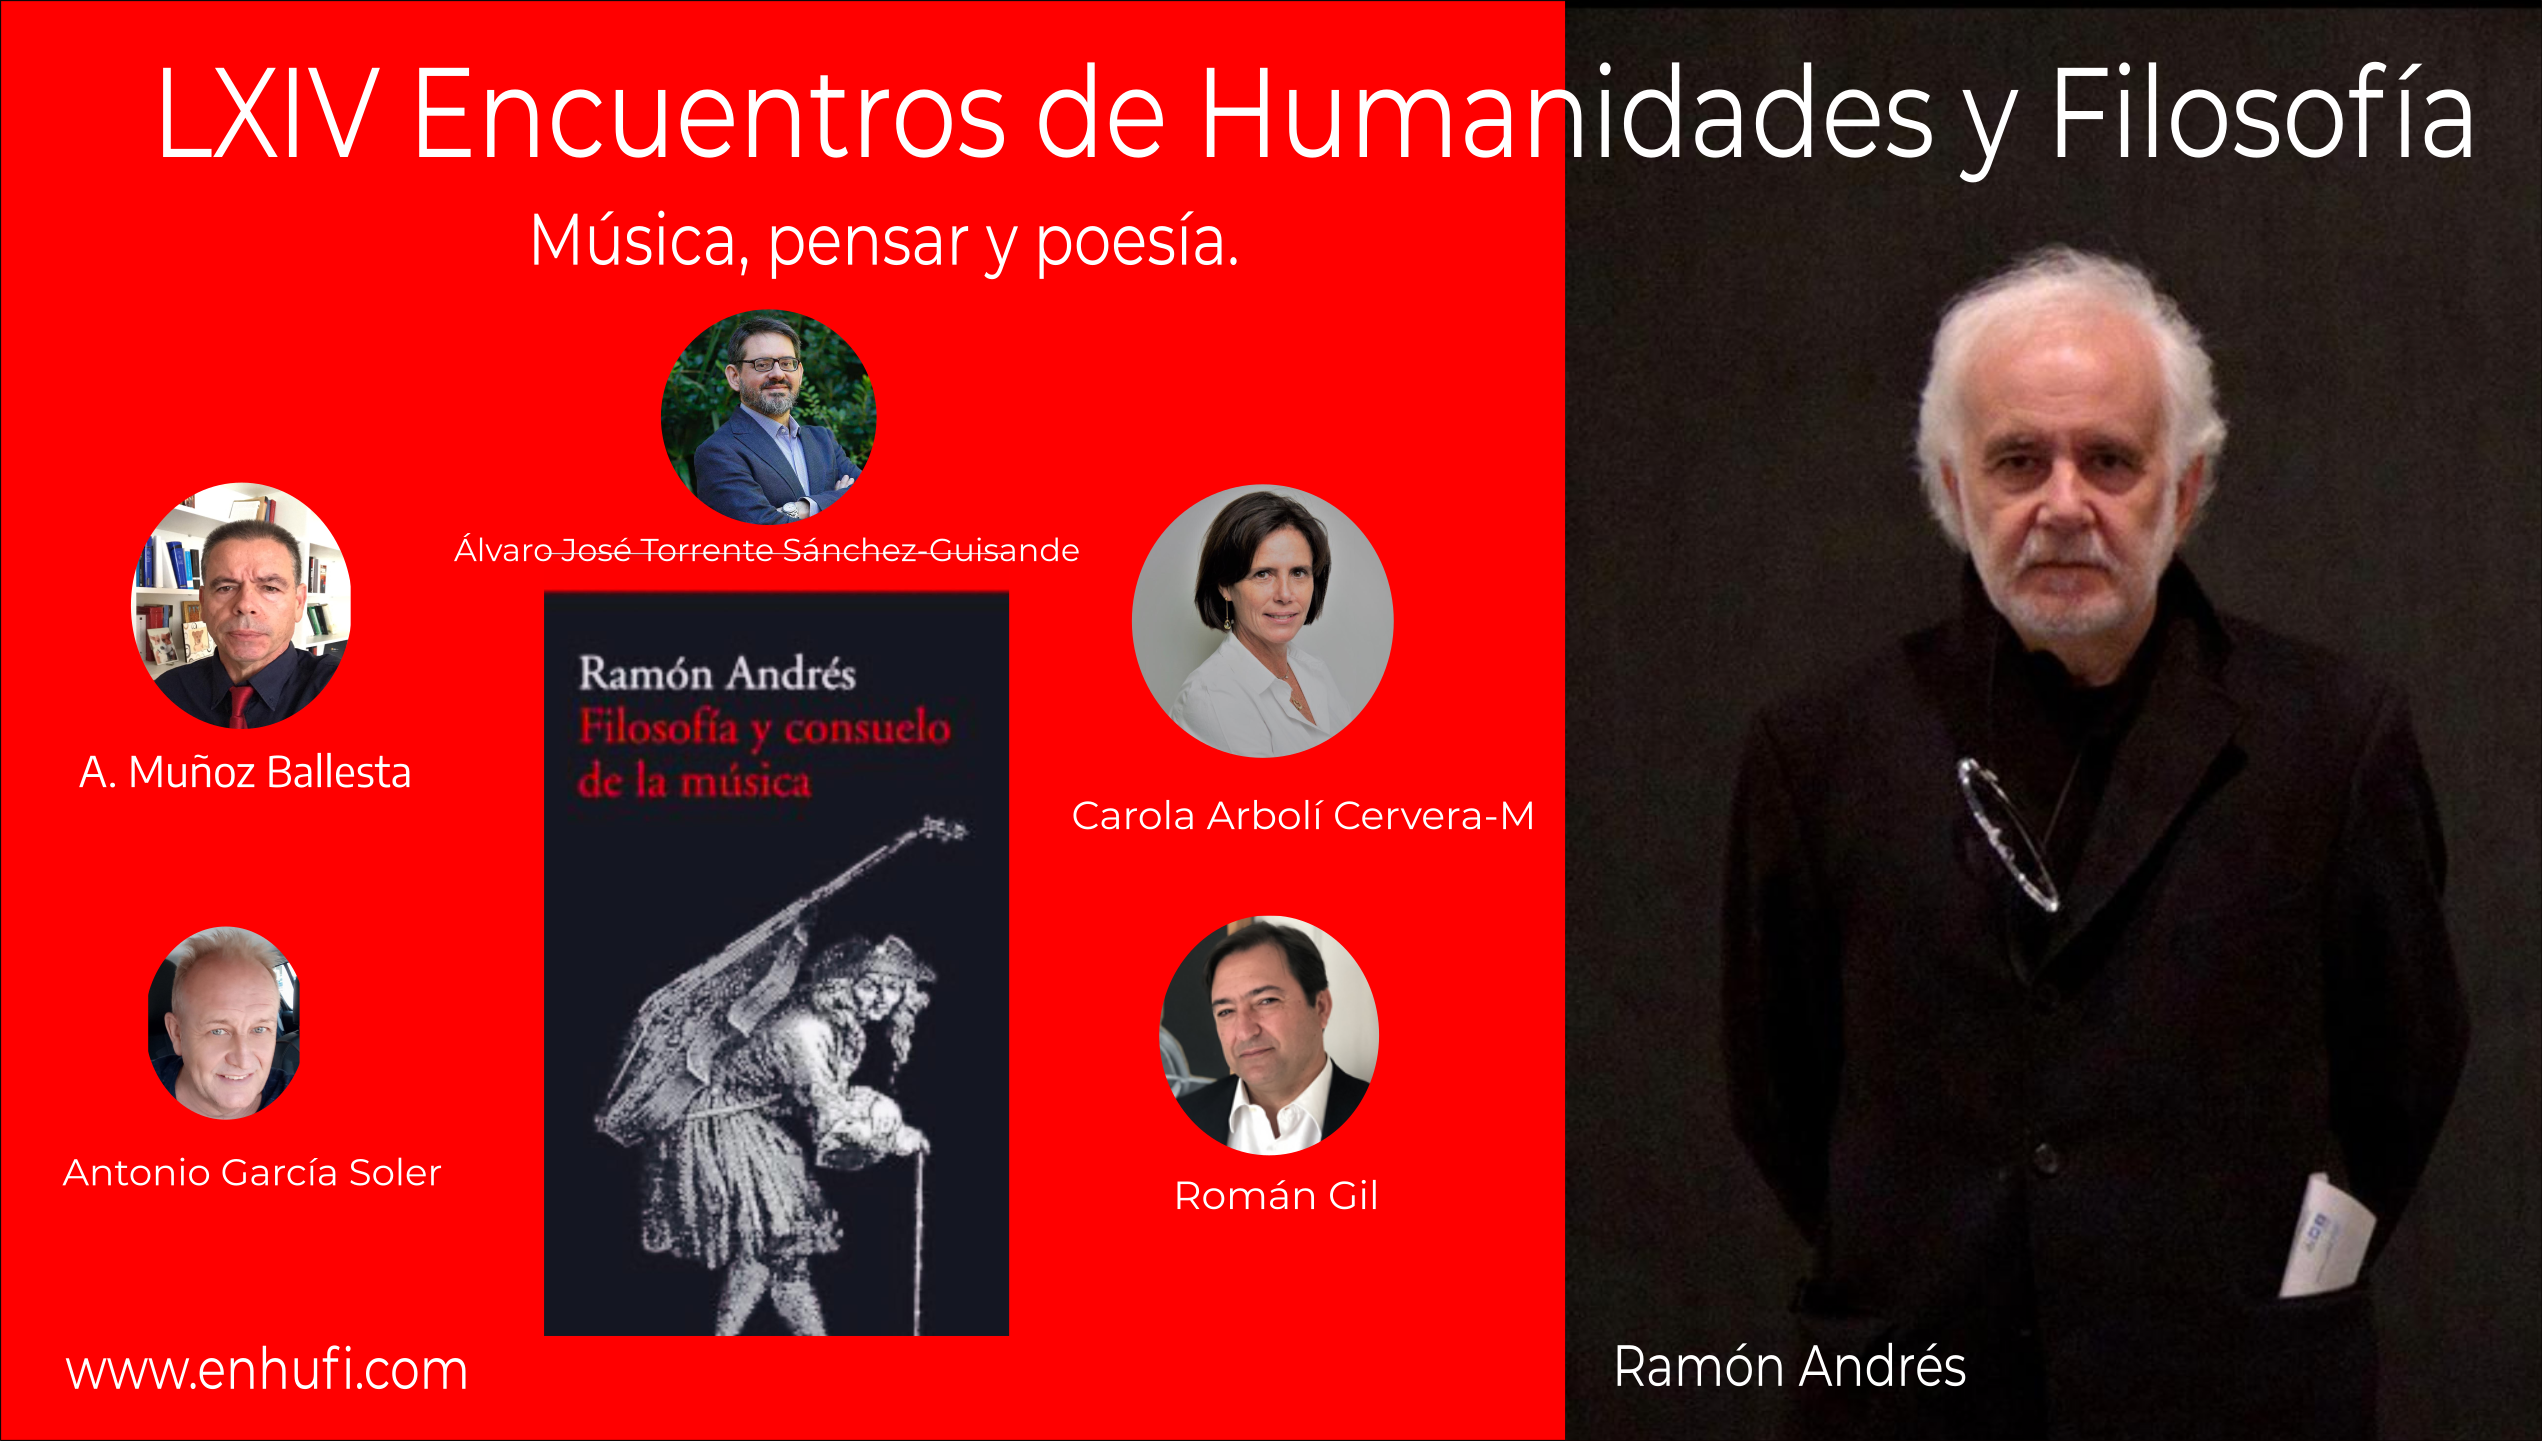 LXIV Encuentros Humanidades y Filosofía: Ramón Andrés, música, pensar y poesía.